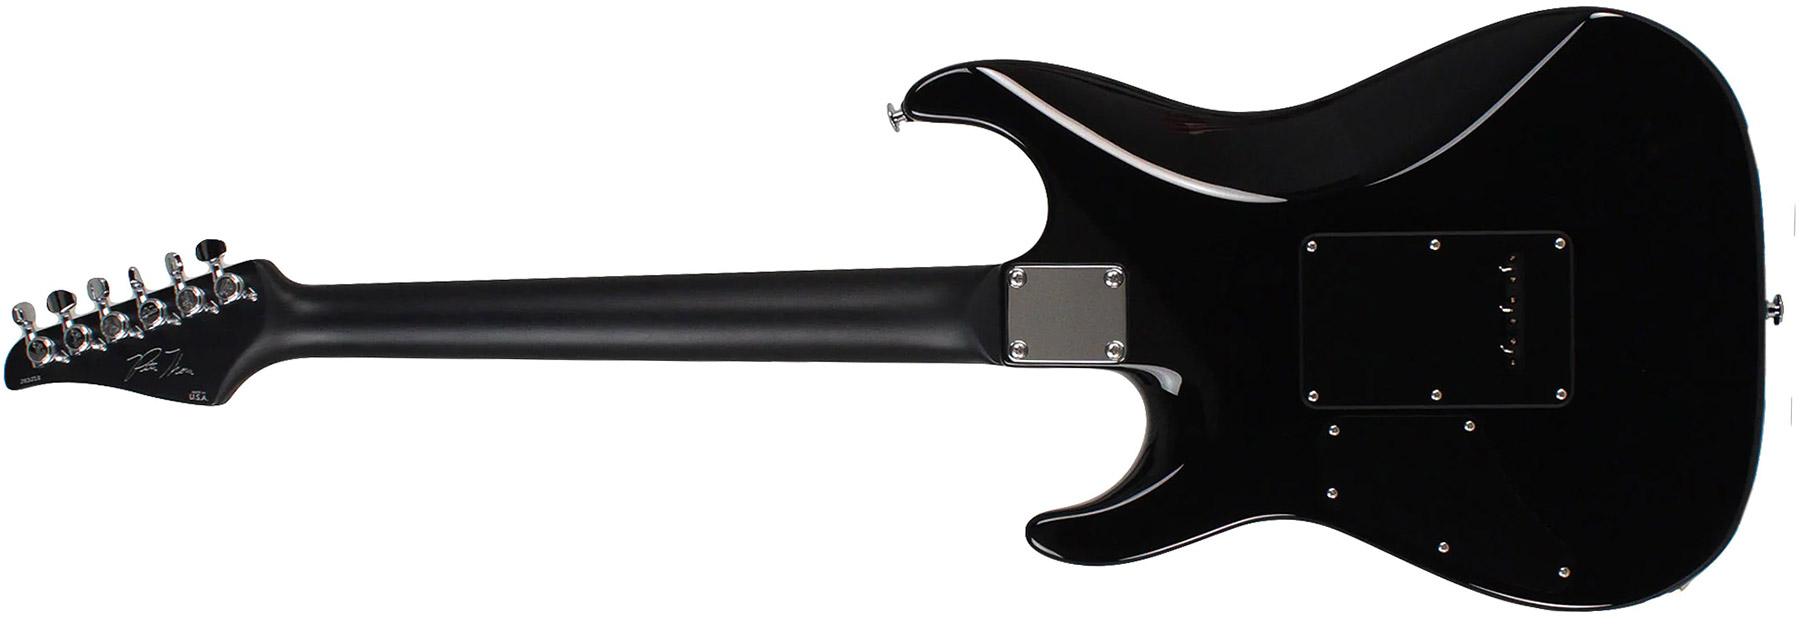 Suhr Pete Thorn Standard 01-sig-0012 Signature 2h Trem Rw - Ocean Turquoise Metallic - Elektrische gitaar in Str-vorm - Variation 1